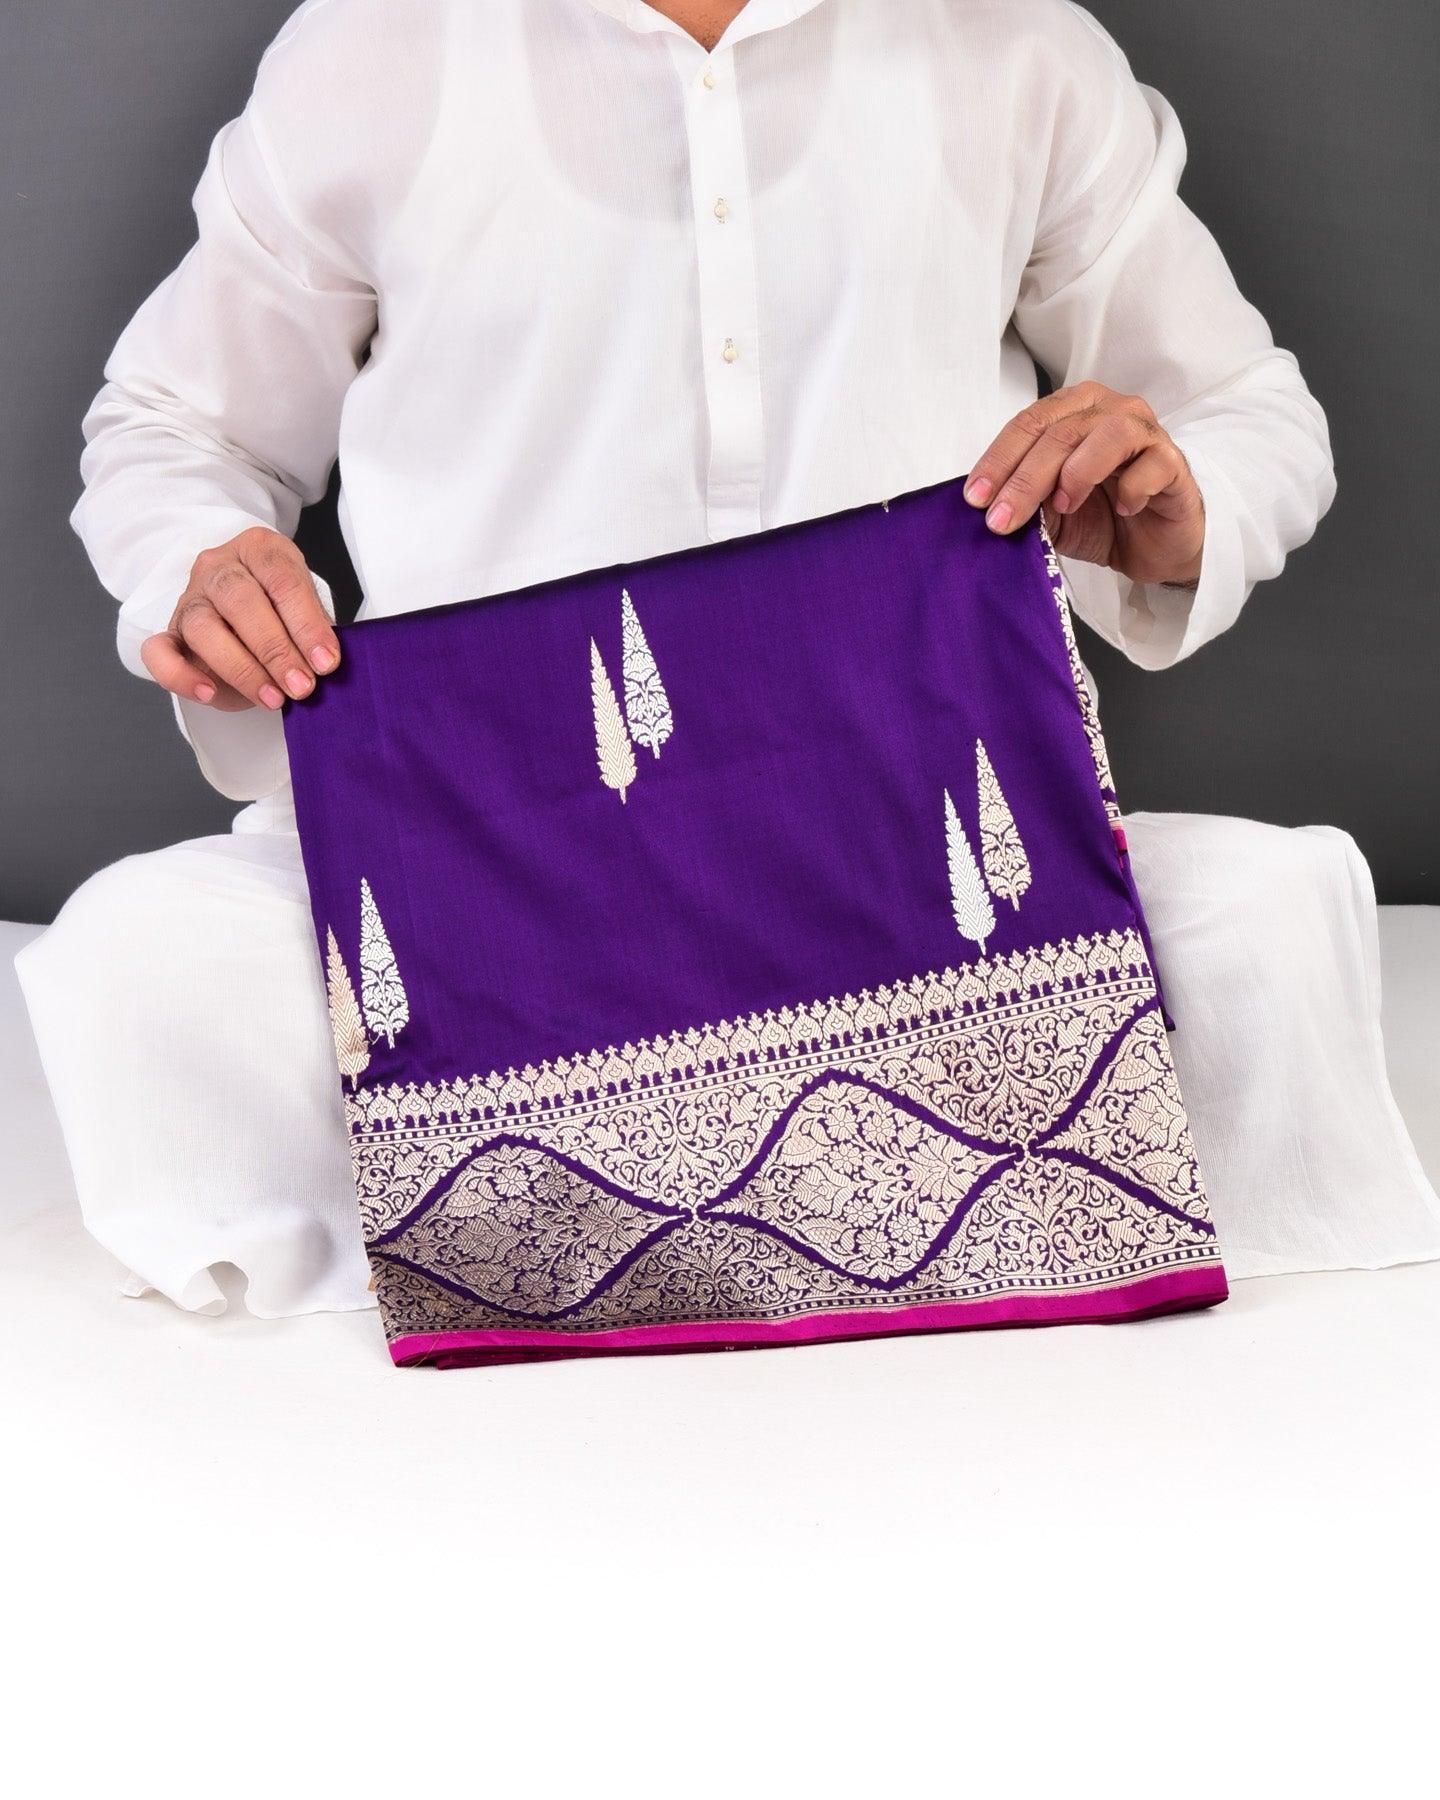 Purple Banarasi Deodara Sona-Rupa Kadhuan Brocade Handwoven Katan Silk Saree - By HolyWeaves, Benares